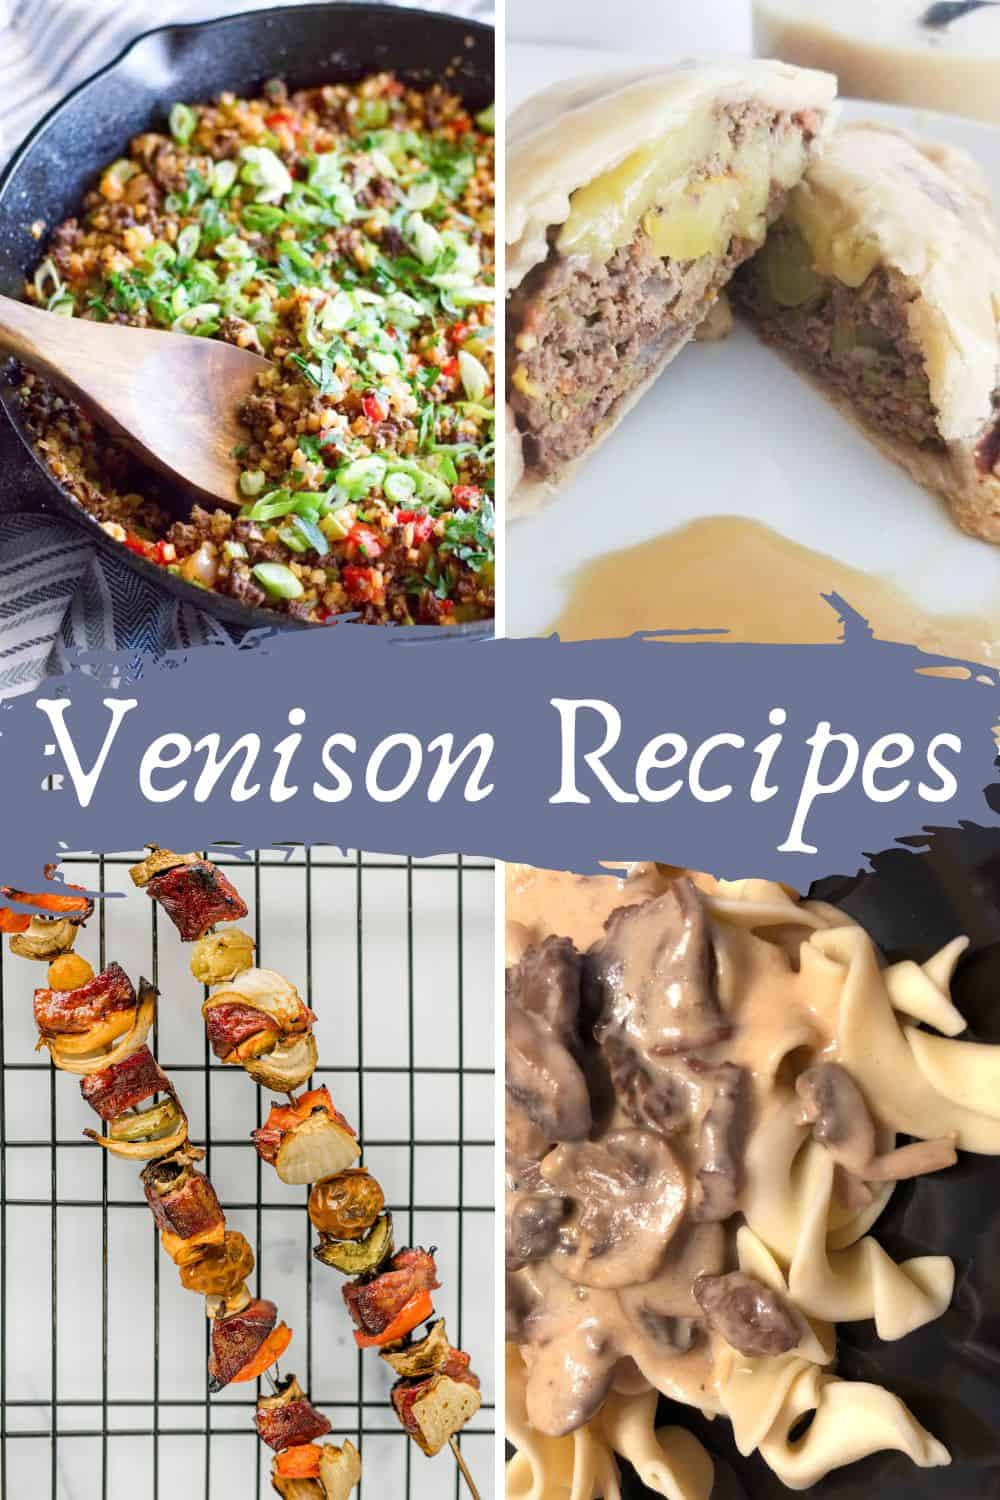 More Venison Meals - Venison Pastries, Venison Kabobs, and Venison Tips and Noodles.